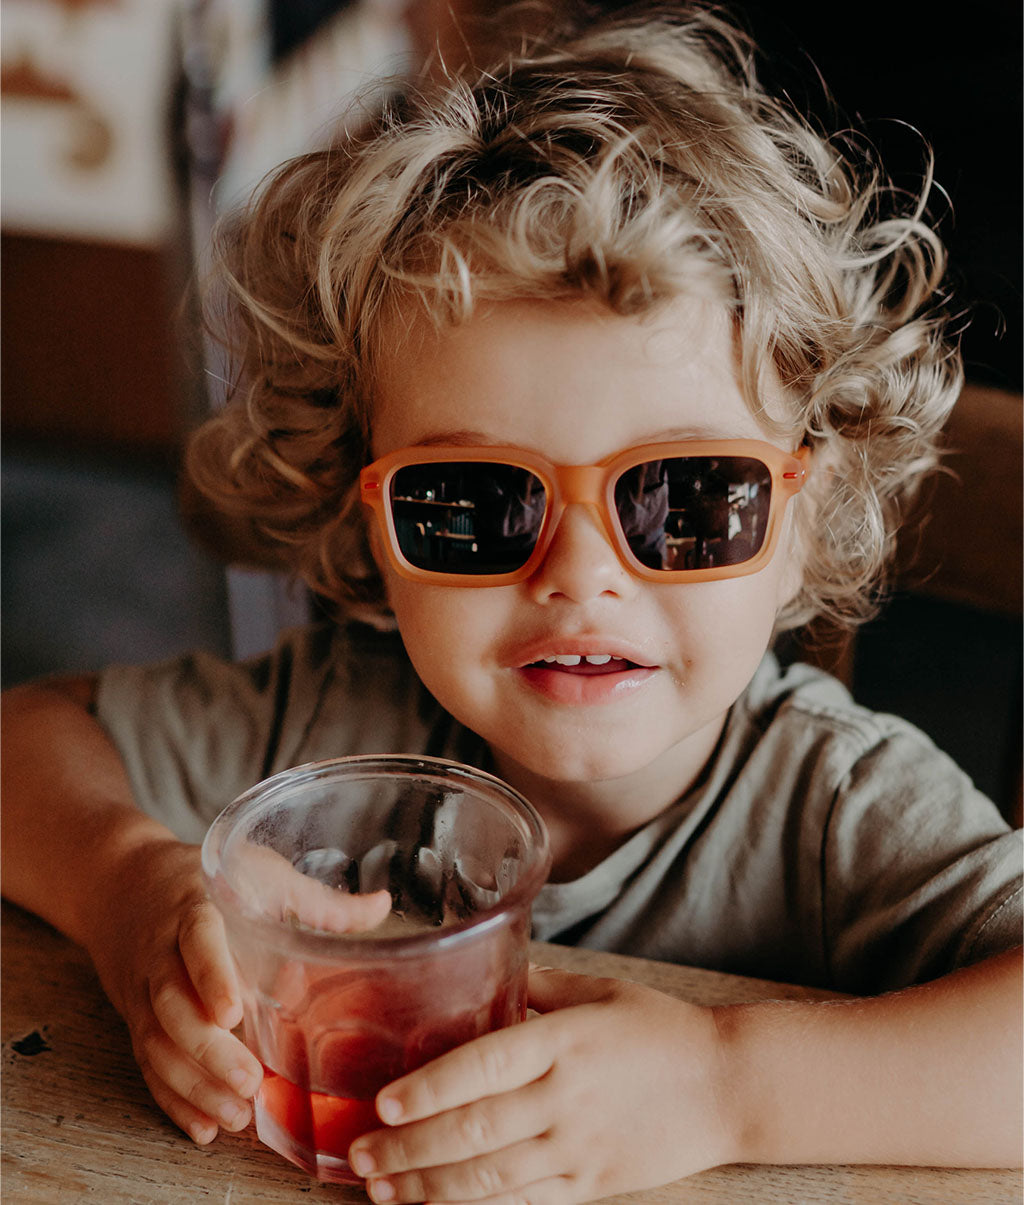 Lunettes de soleil Enfants Morzi Jill, colorées, verres catégorie 3, UV400, verres polarisés, dès 2 ans, Cool Kids Only !